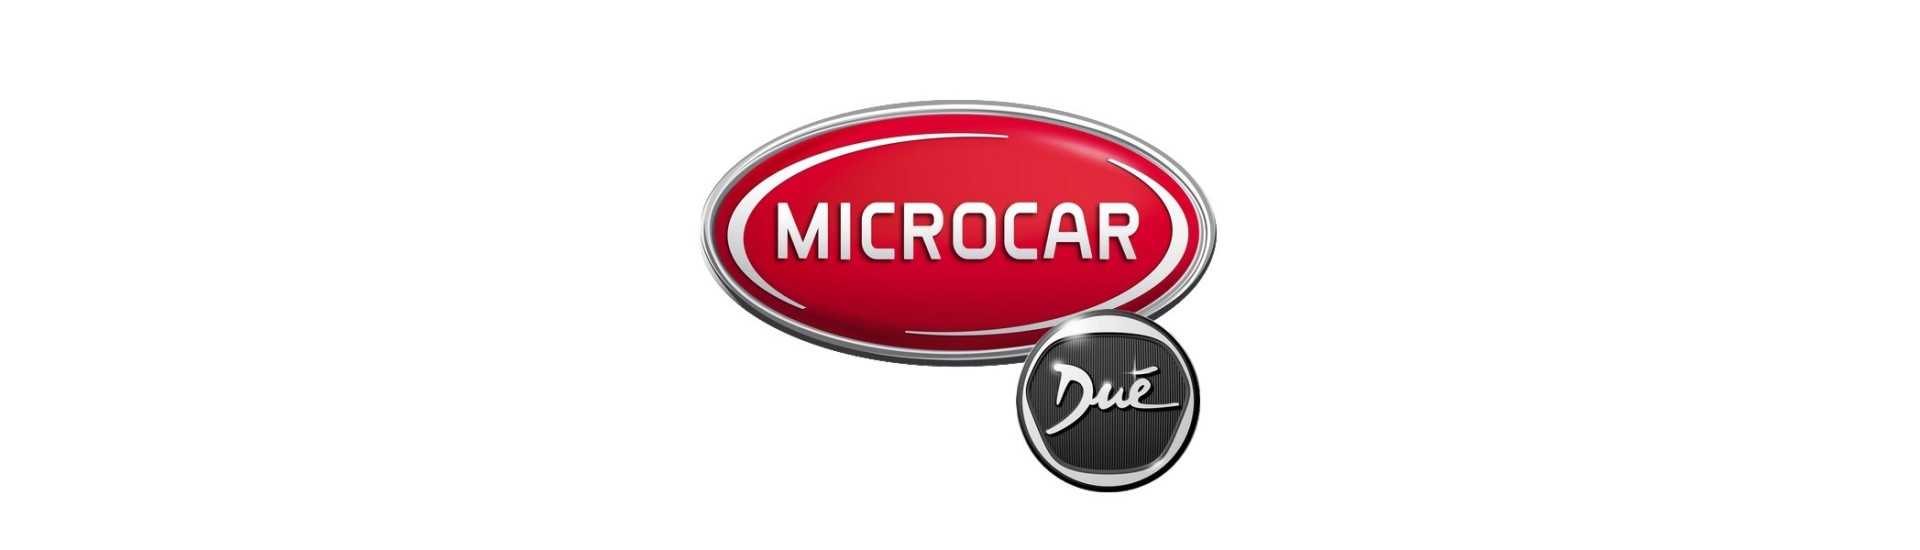 Farol ao melhor preço do carro sem licença Microcar Dué